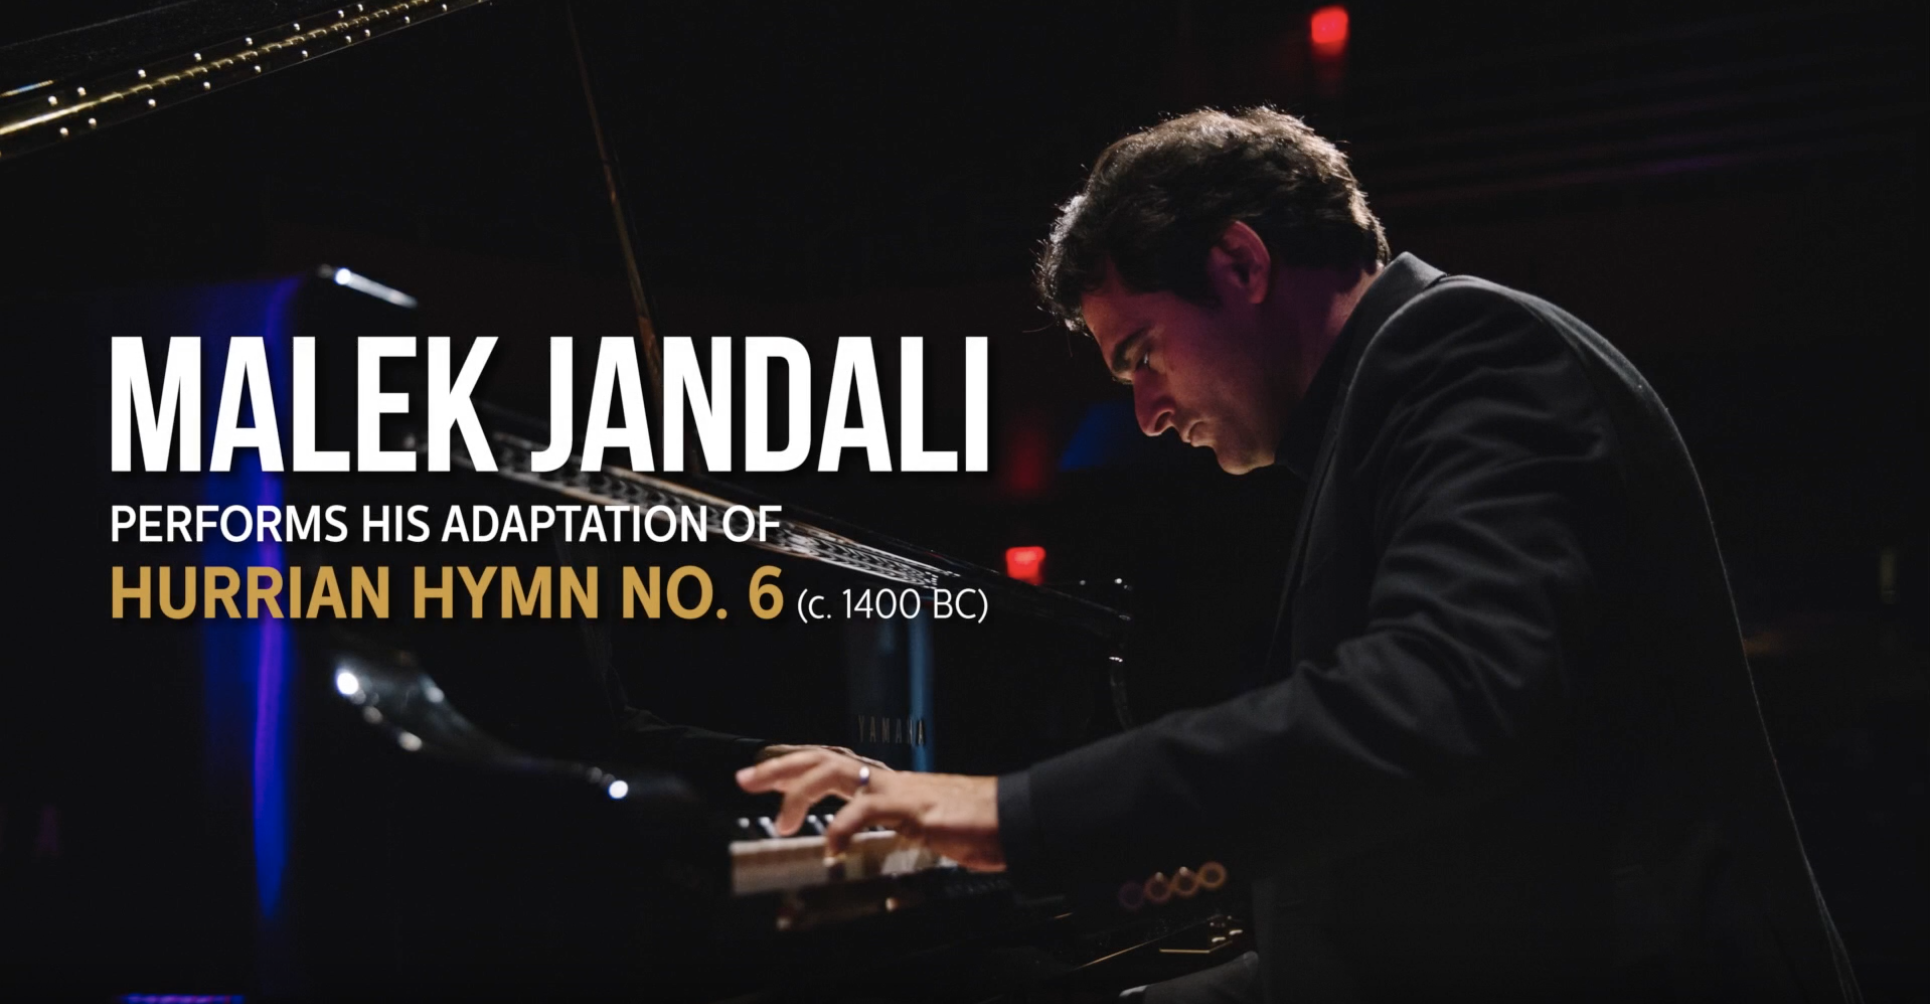 Malek Jandali Performs His Adaptation of “Hurrian Hymn no. 6”